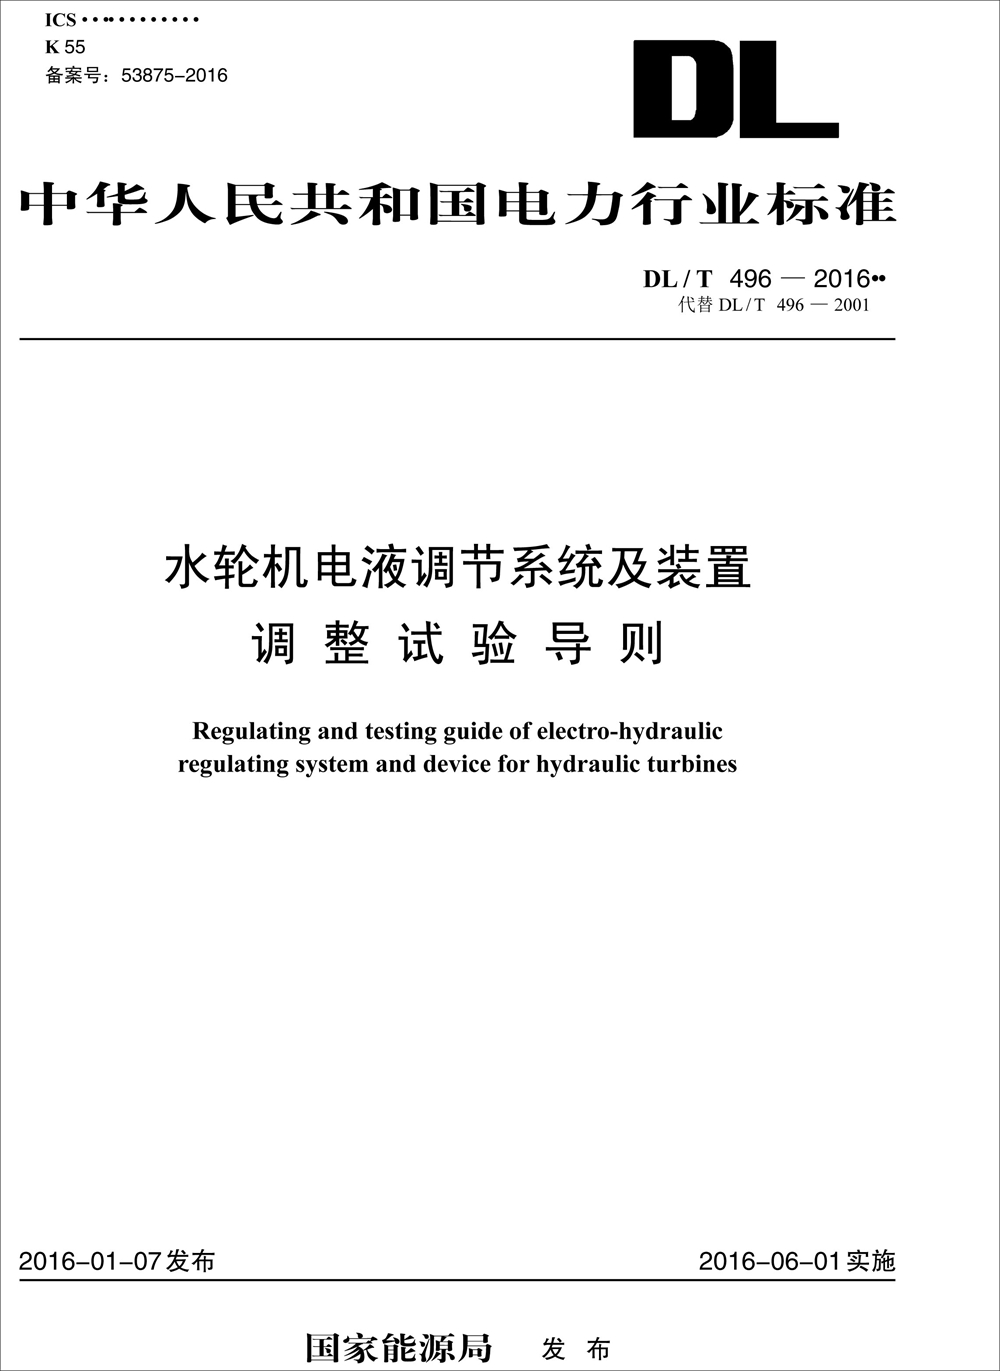 中华人民共和国电力行业标准（DL/T 496-2016）：水轮机电液调节系统及装置调整试验导则